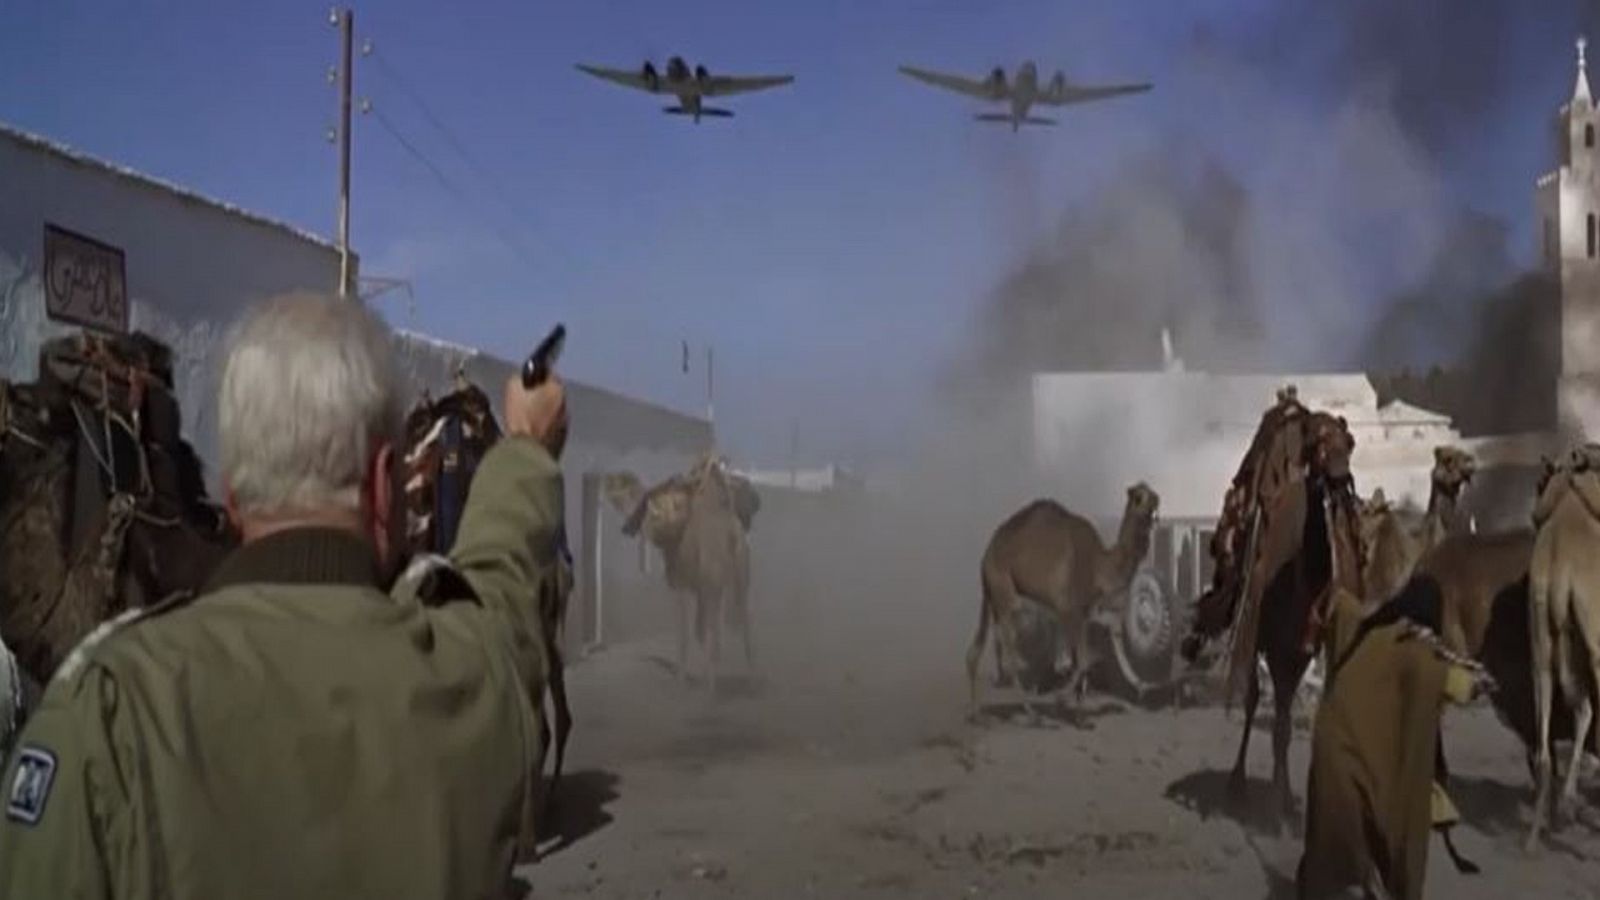 Patton disprando a un avión alemán, en un pueblo árabe. En realidad es La Almadraba de Monteleva, en el Parque Natural de Cabo de Gata  Níjar